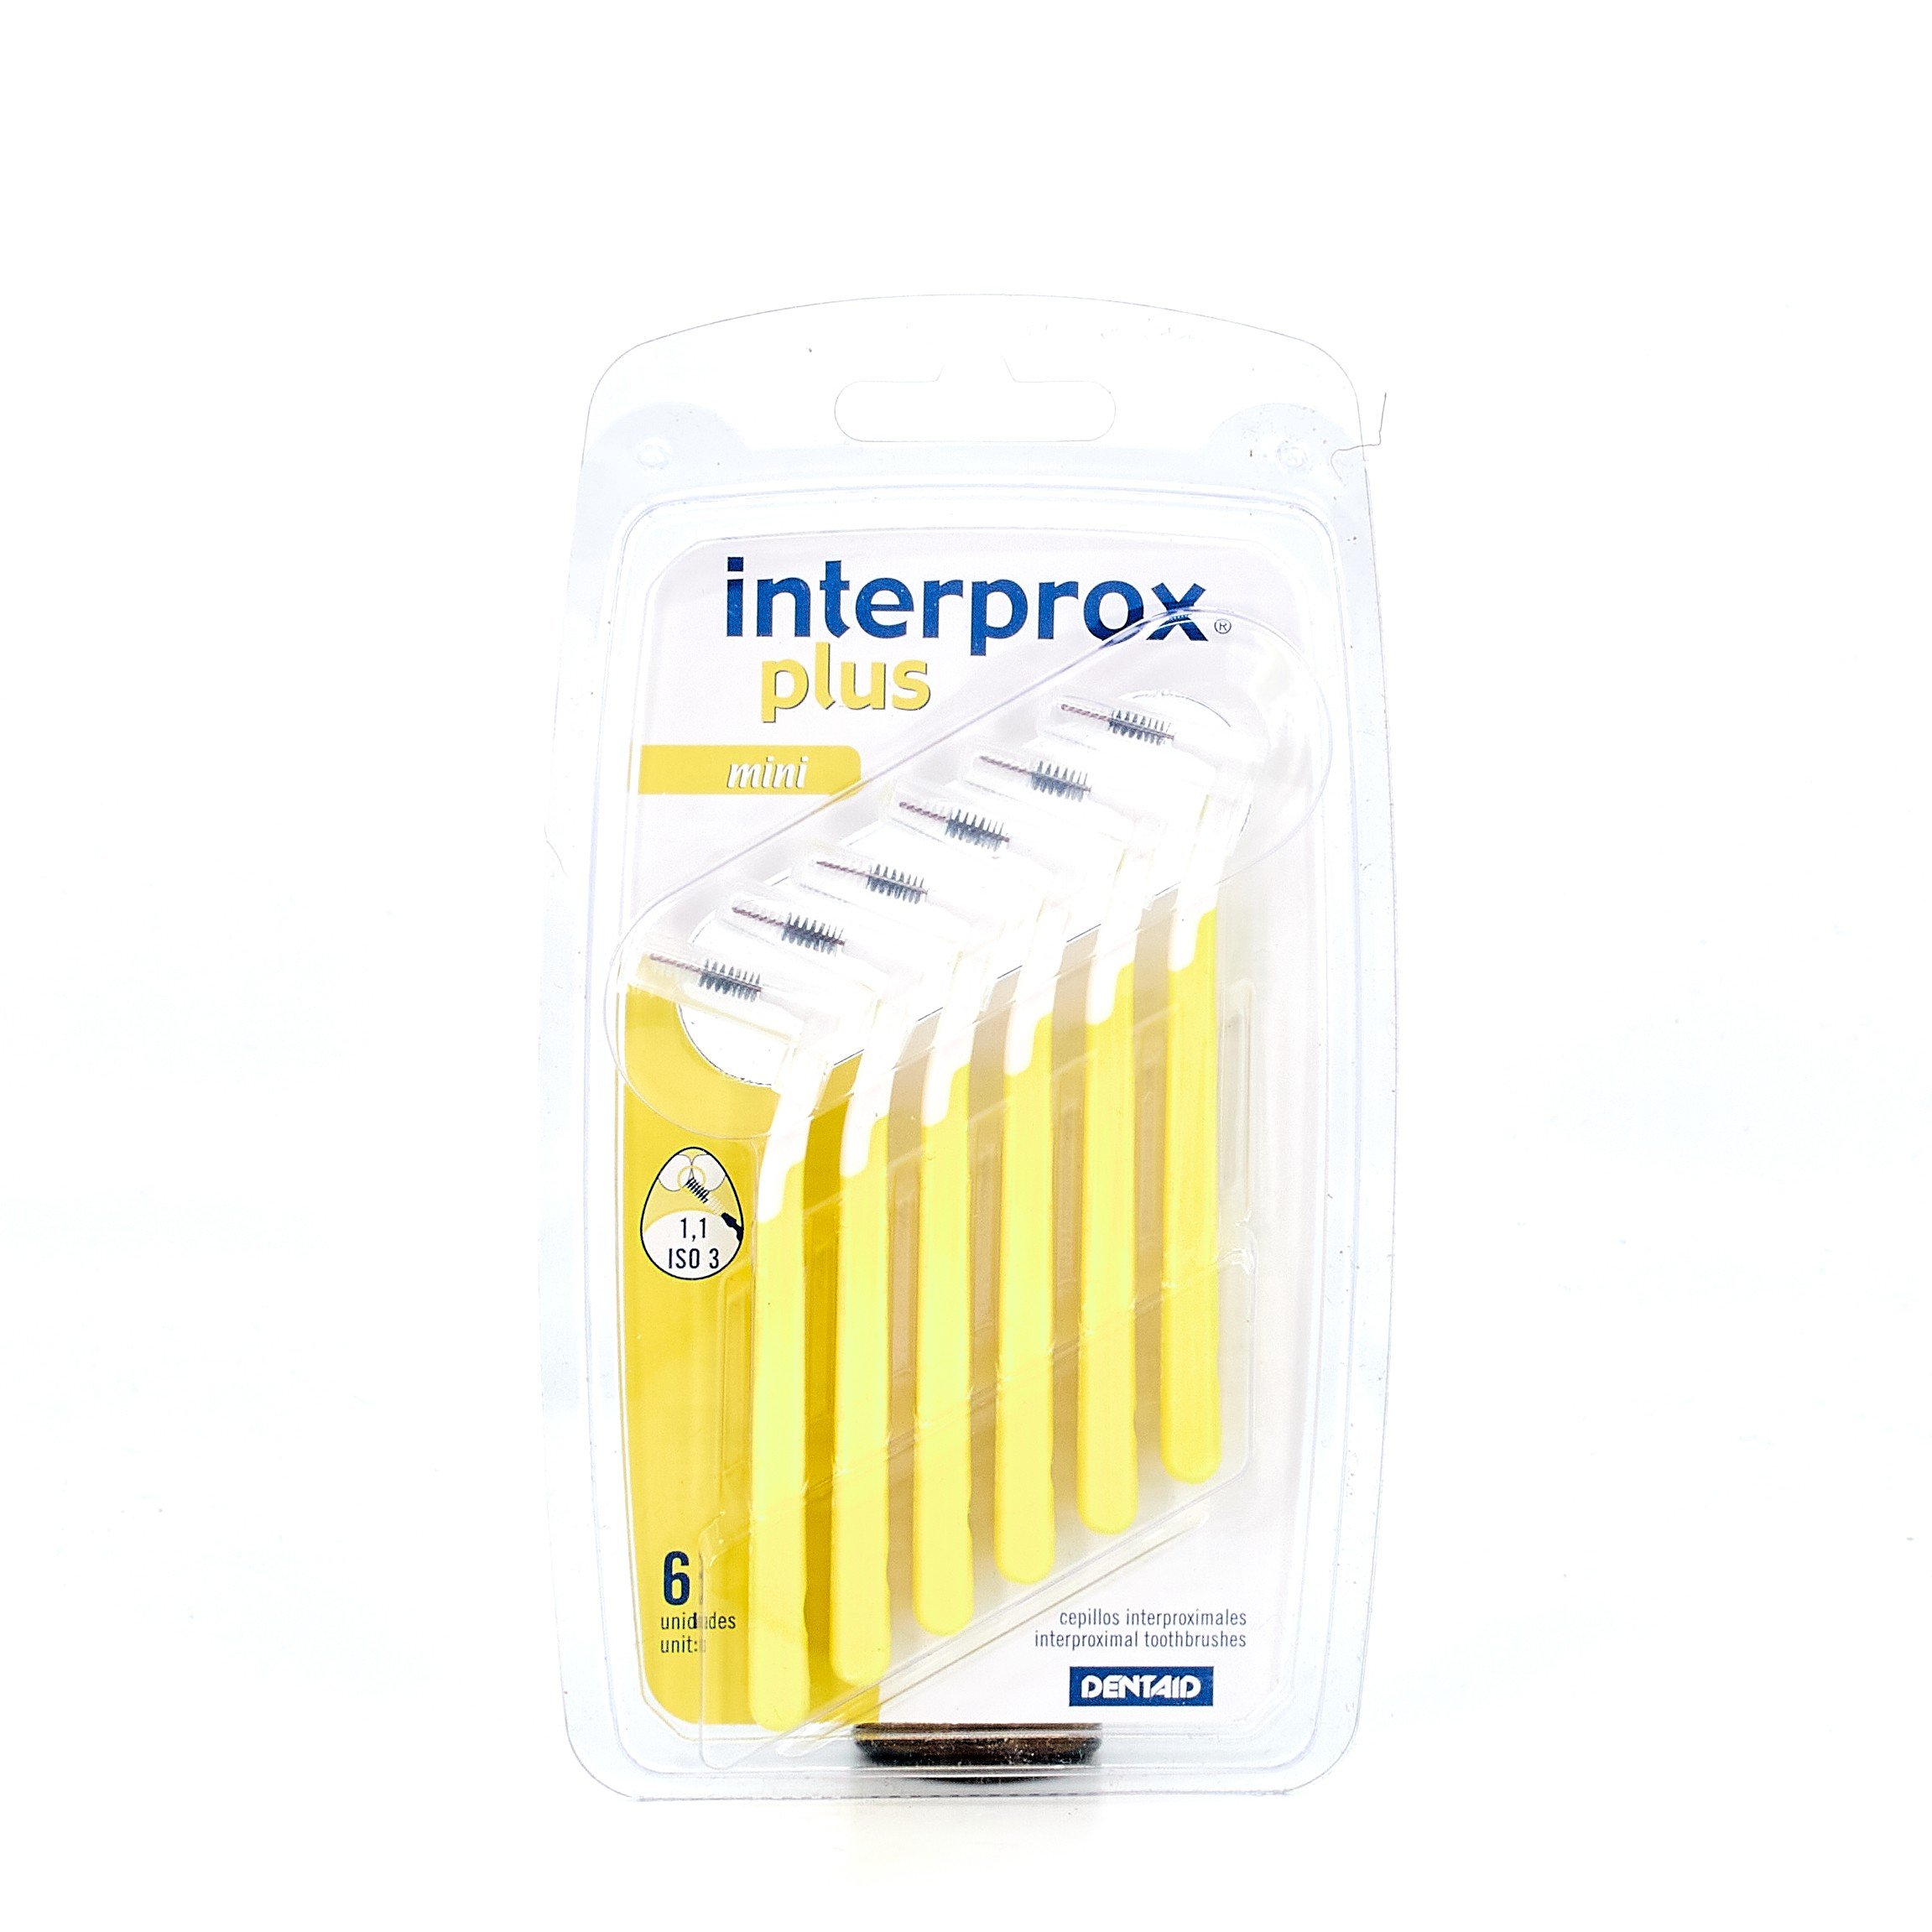 Interprox Plus MIni, 6U.